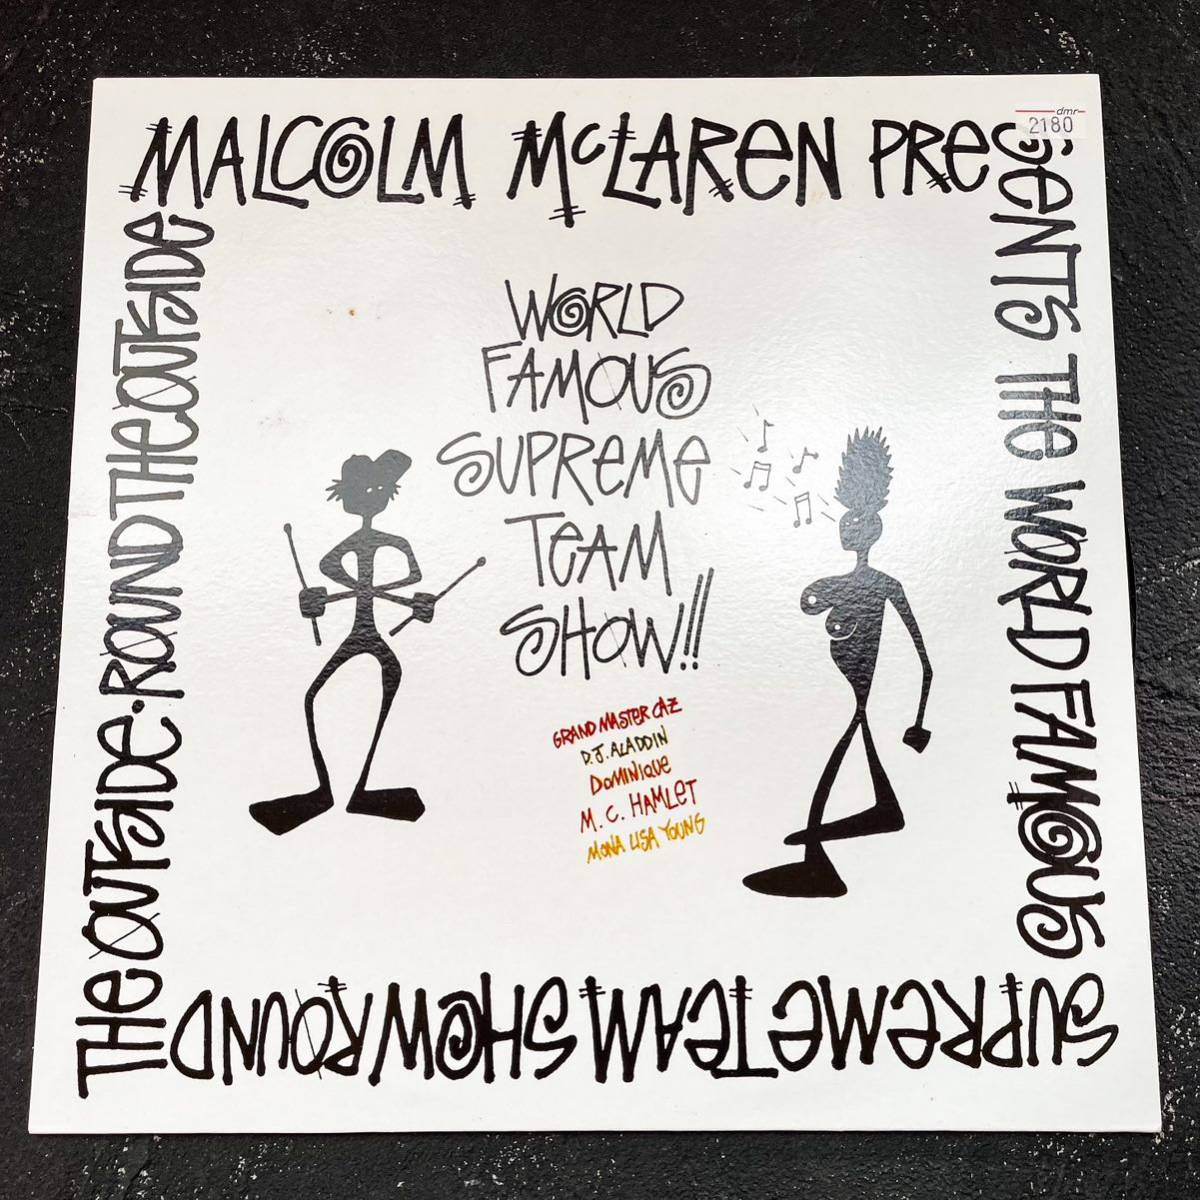 90年代 MALCOLM McLAREN WORLD FAMOUS SUPREME TEAM SHOW LPレコード マルコムマクラーレン ステューシー stussy supream シュプリーム